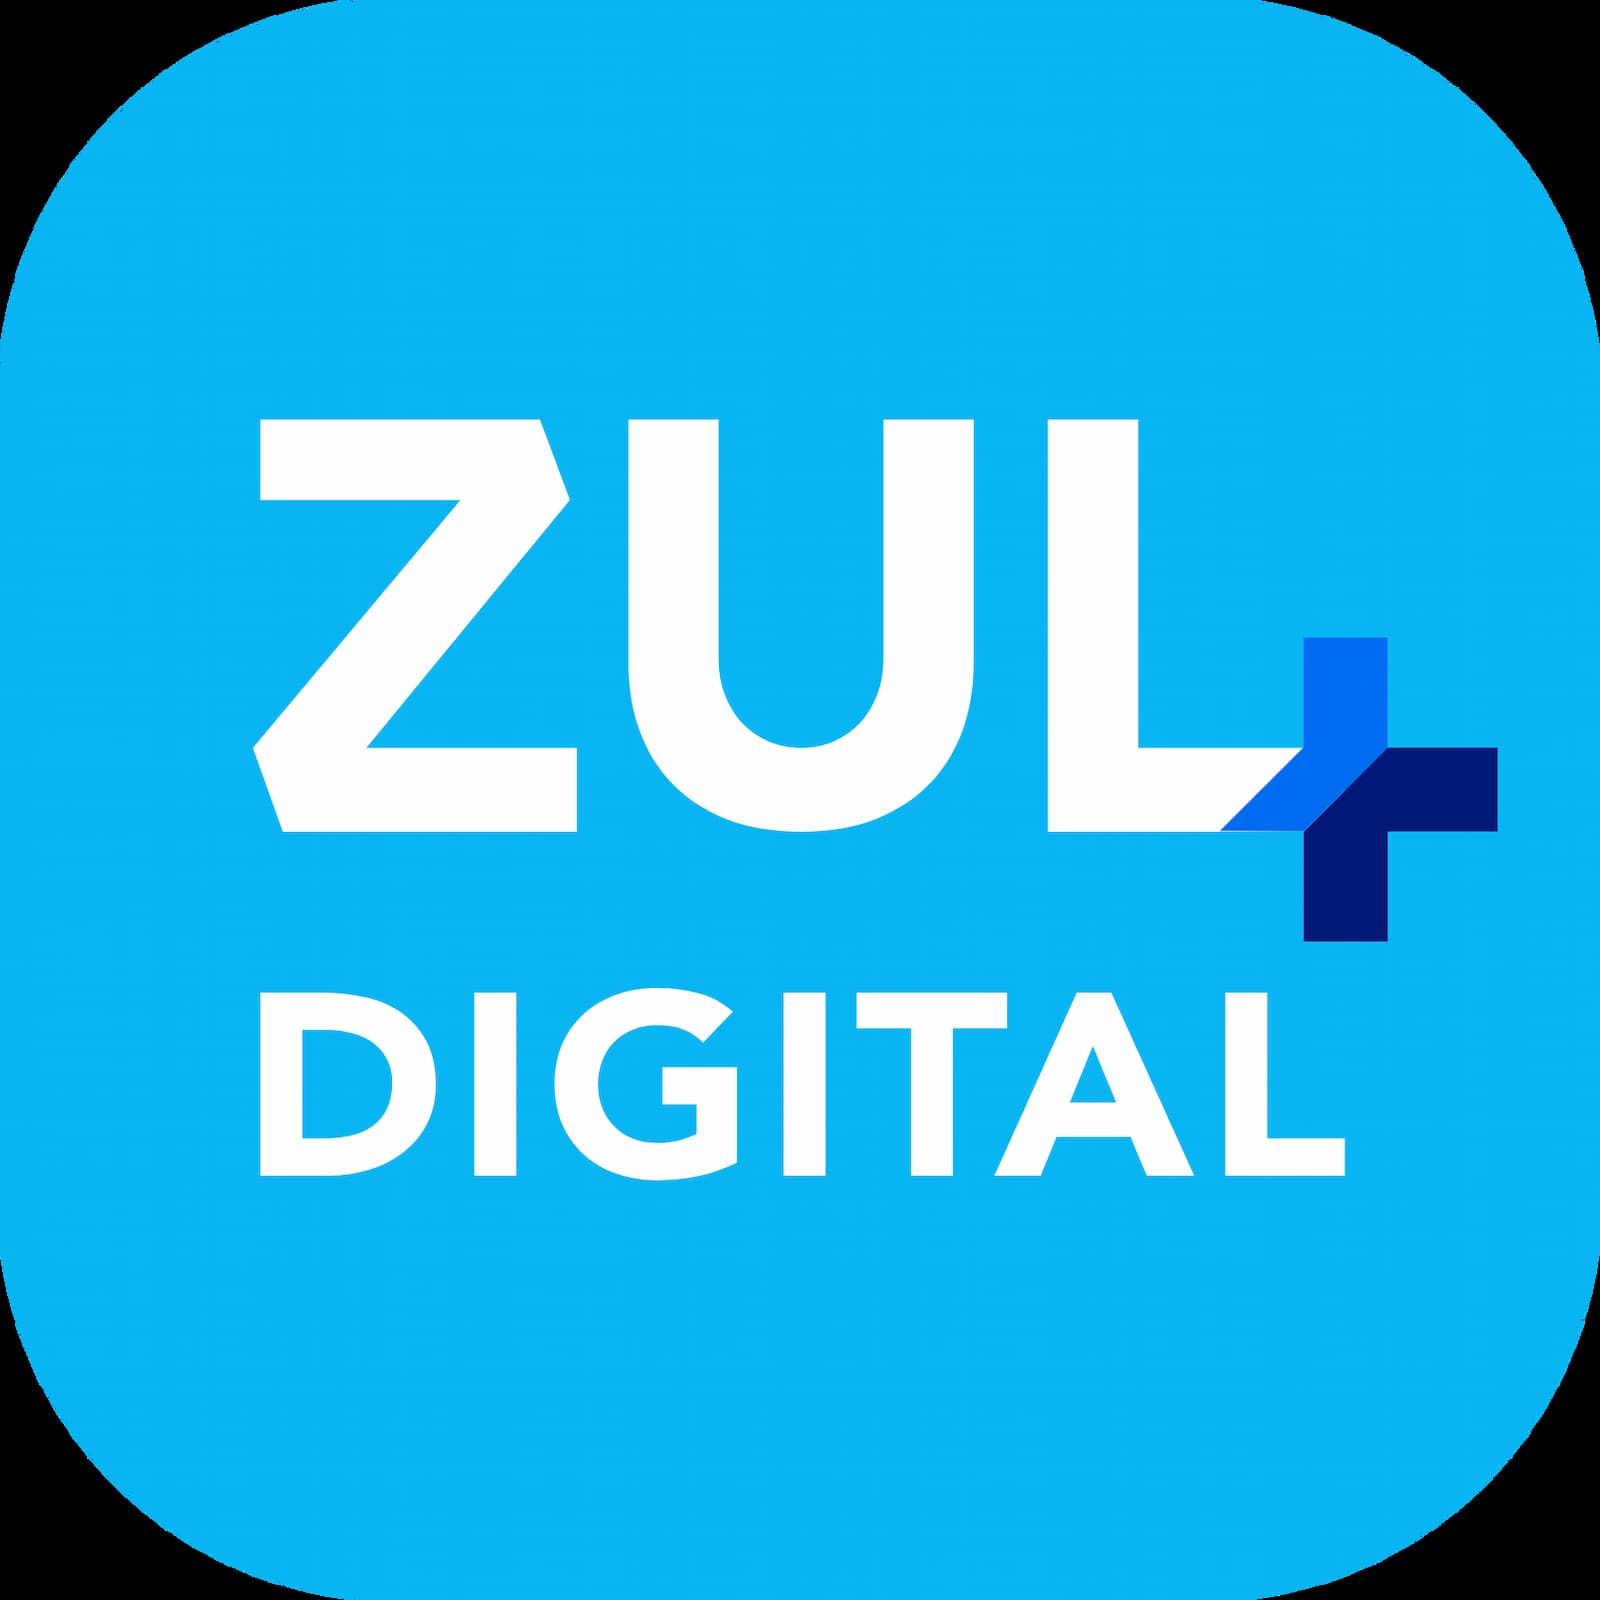 Zul Digital